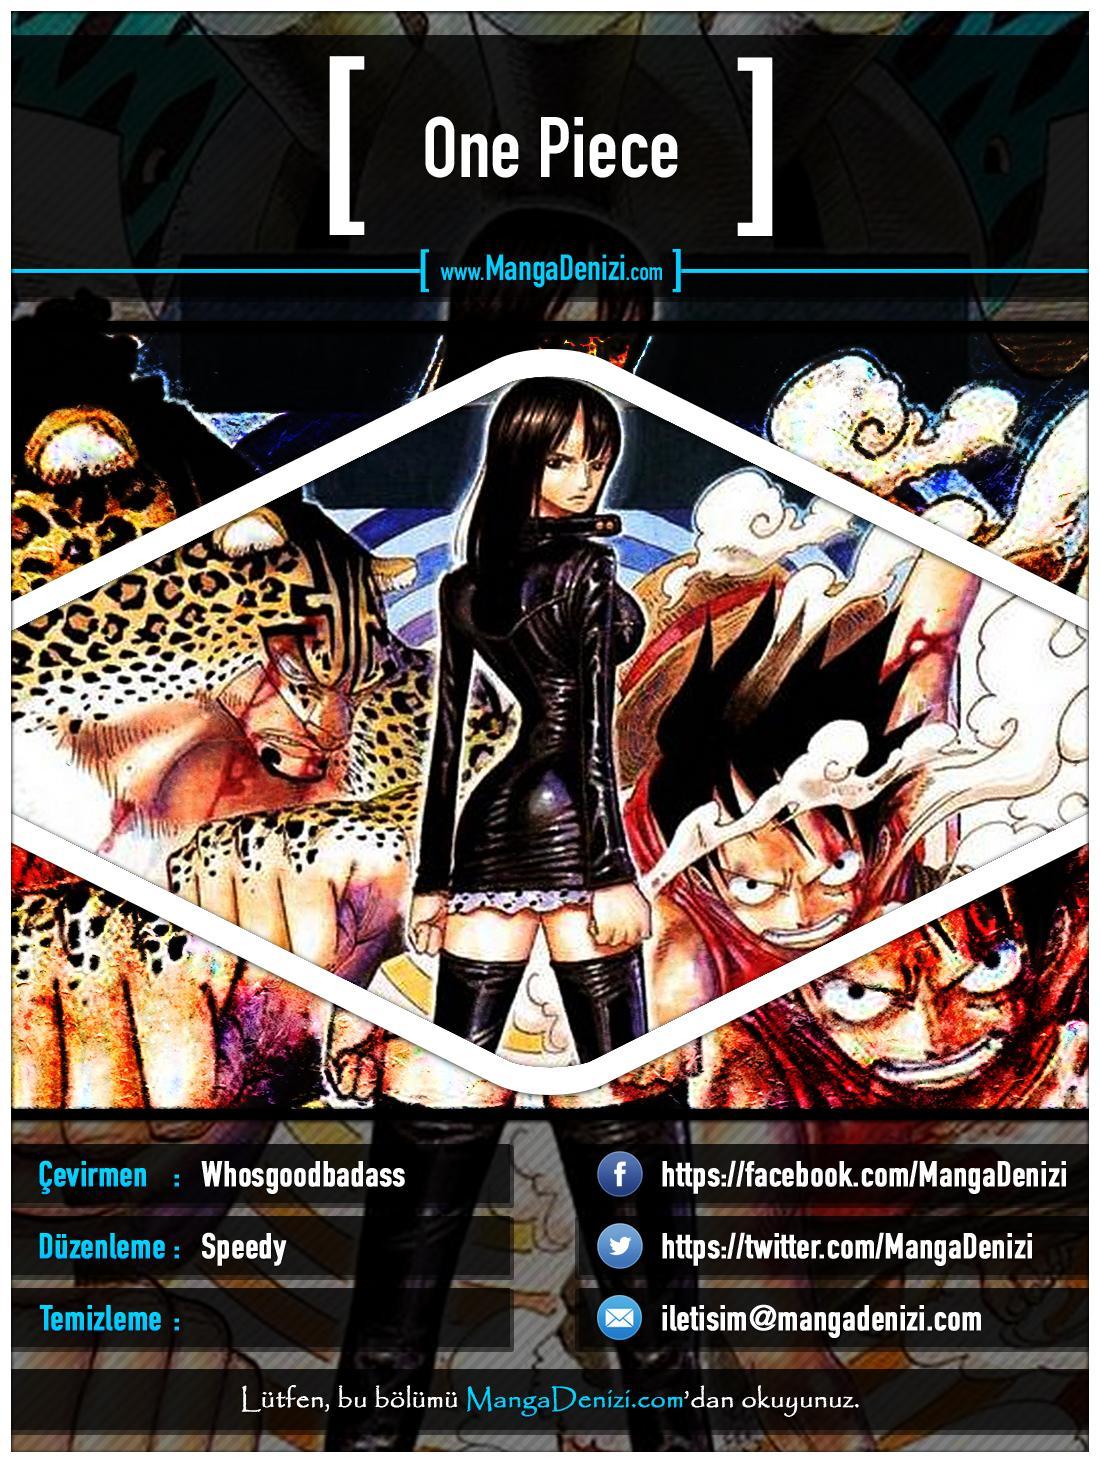 One Piece [Renkli] mangasının 0365 bölümünün 1. sayfasını okuyorsunuz.